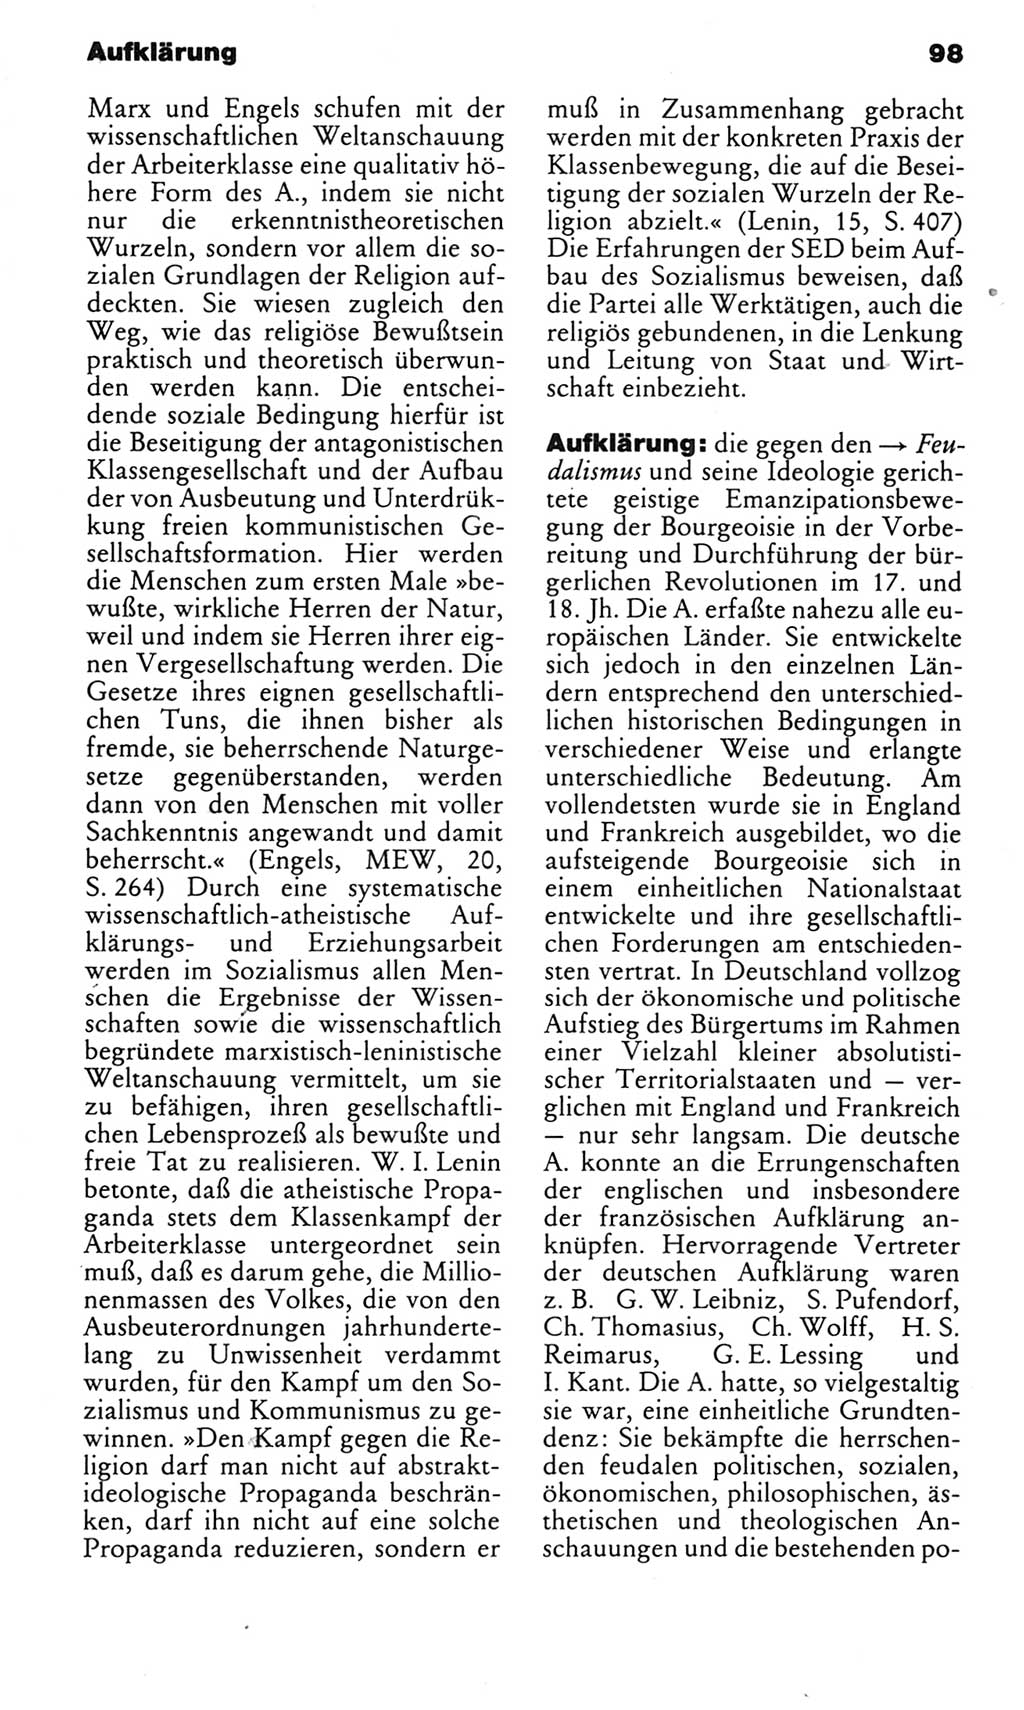 Kleines politisches Wörterbuch [Deutsche Demokratische Republik (DDR)] 1983, Seite 98 (Kl. pol. Wb. DDR 1983, S. 98)